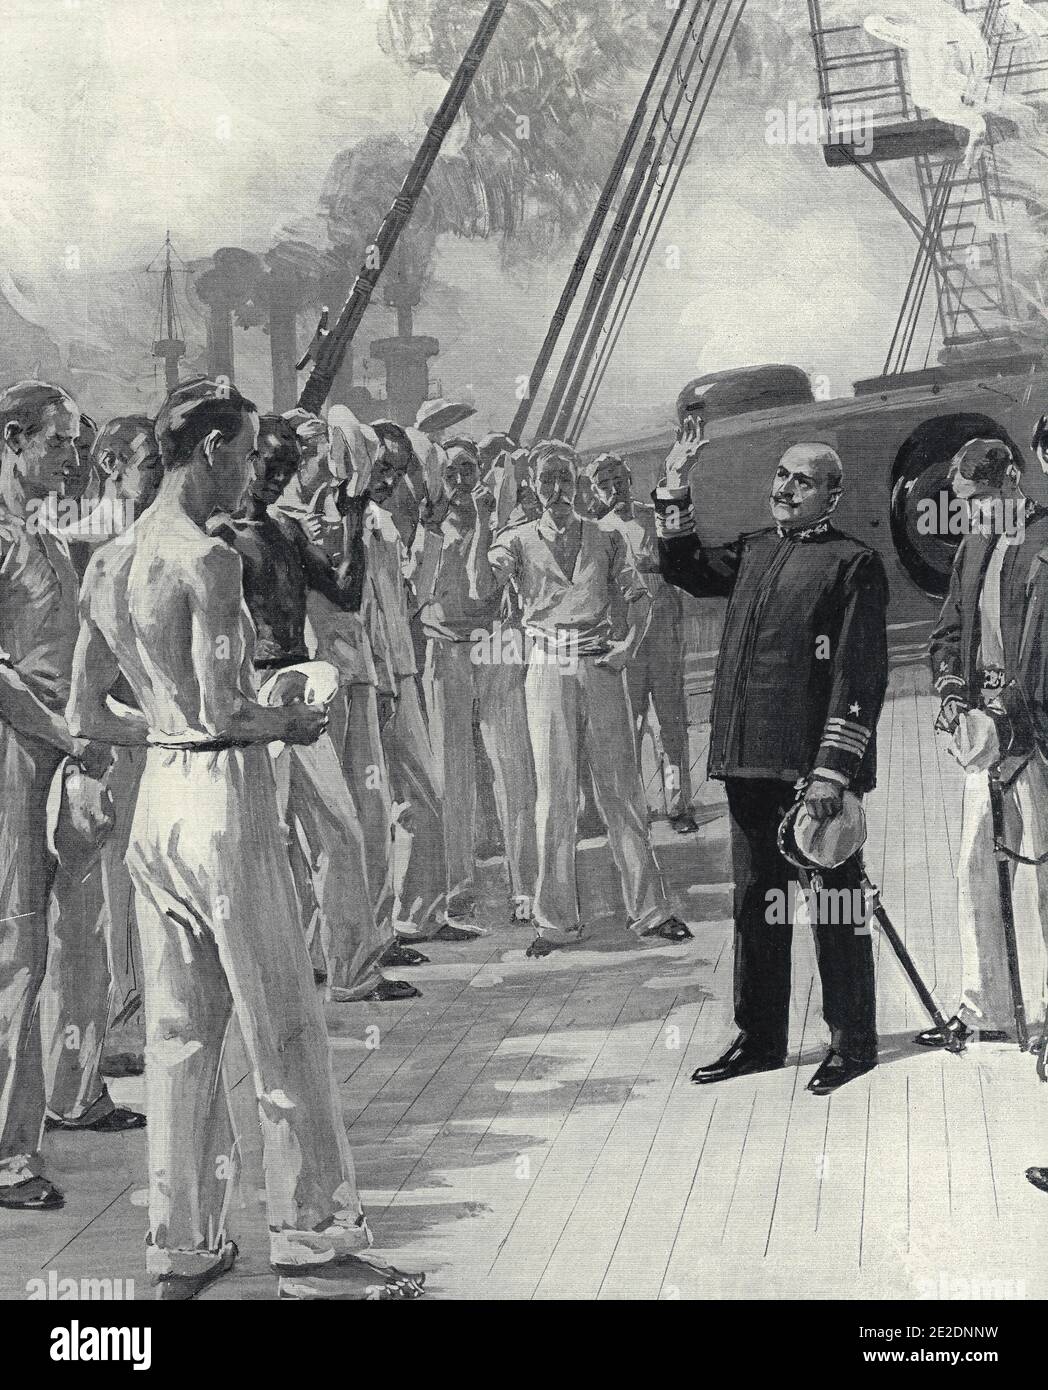 Kapitän Philip Danksagung auf dem Deck der USS Texas während des Spanischen Amerikanischen Krieges, 1898 Stockfoto